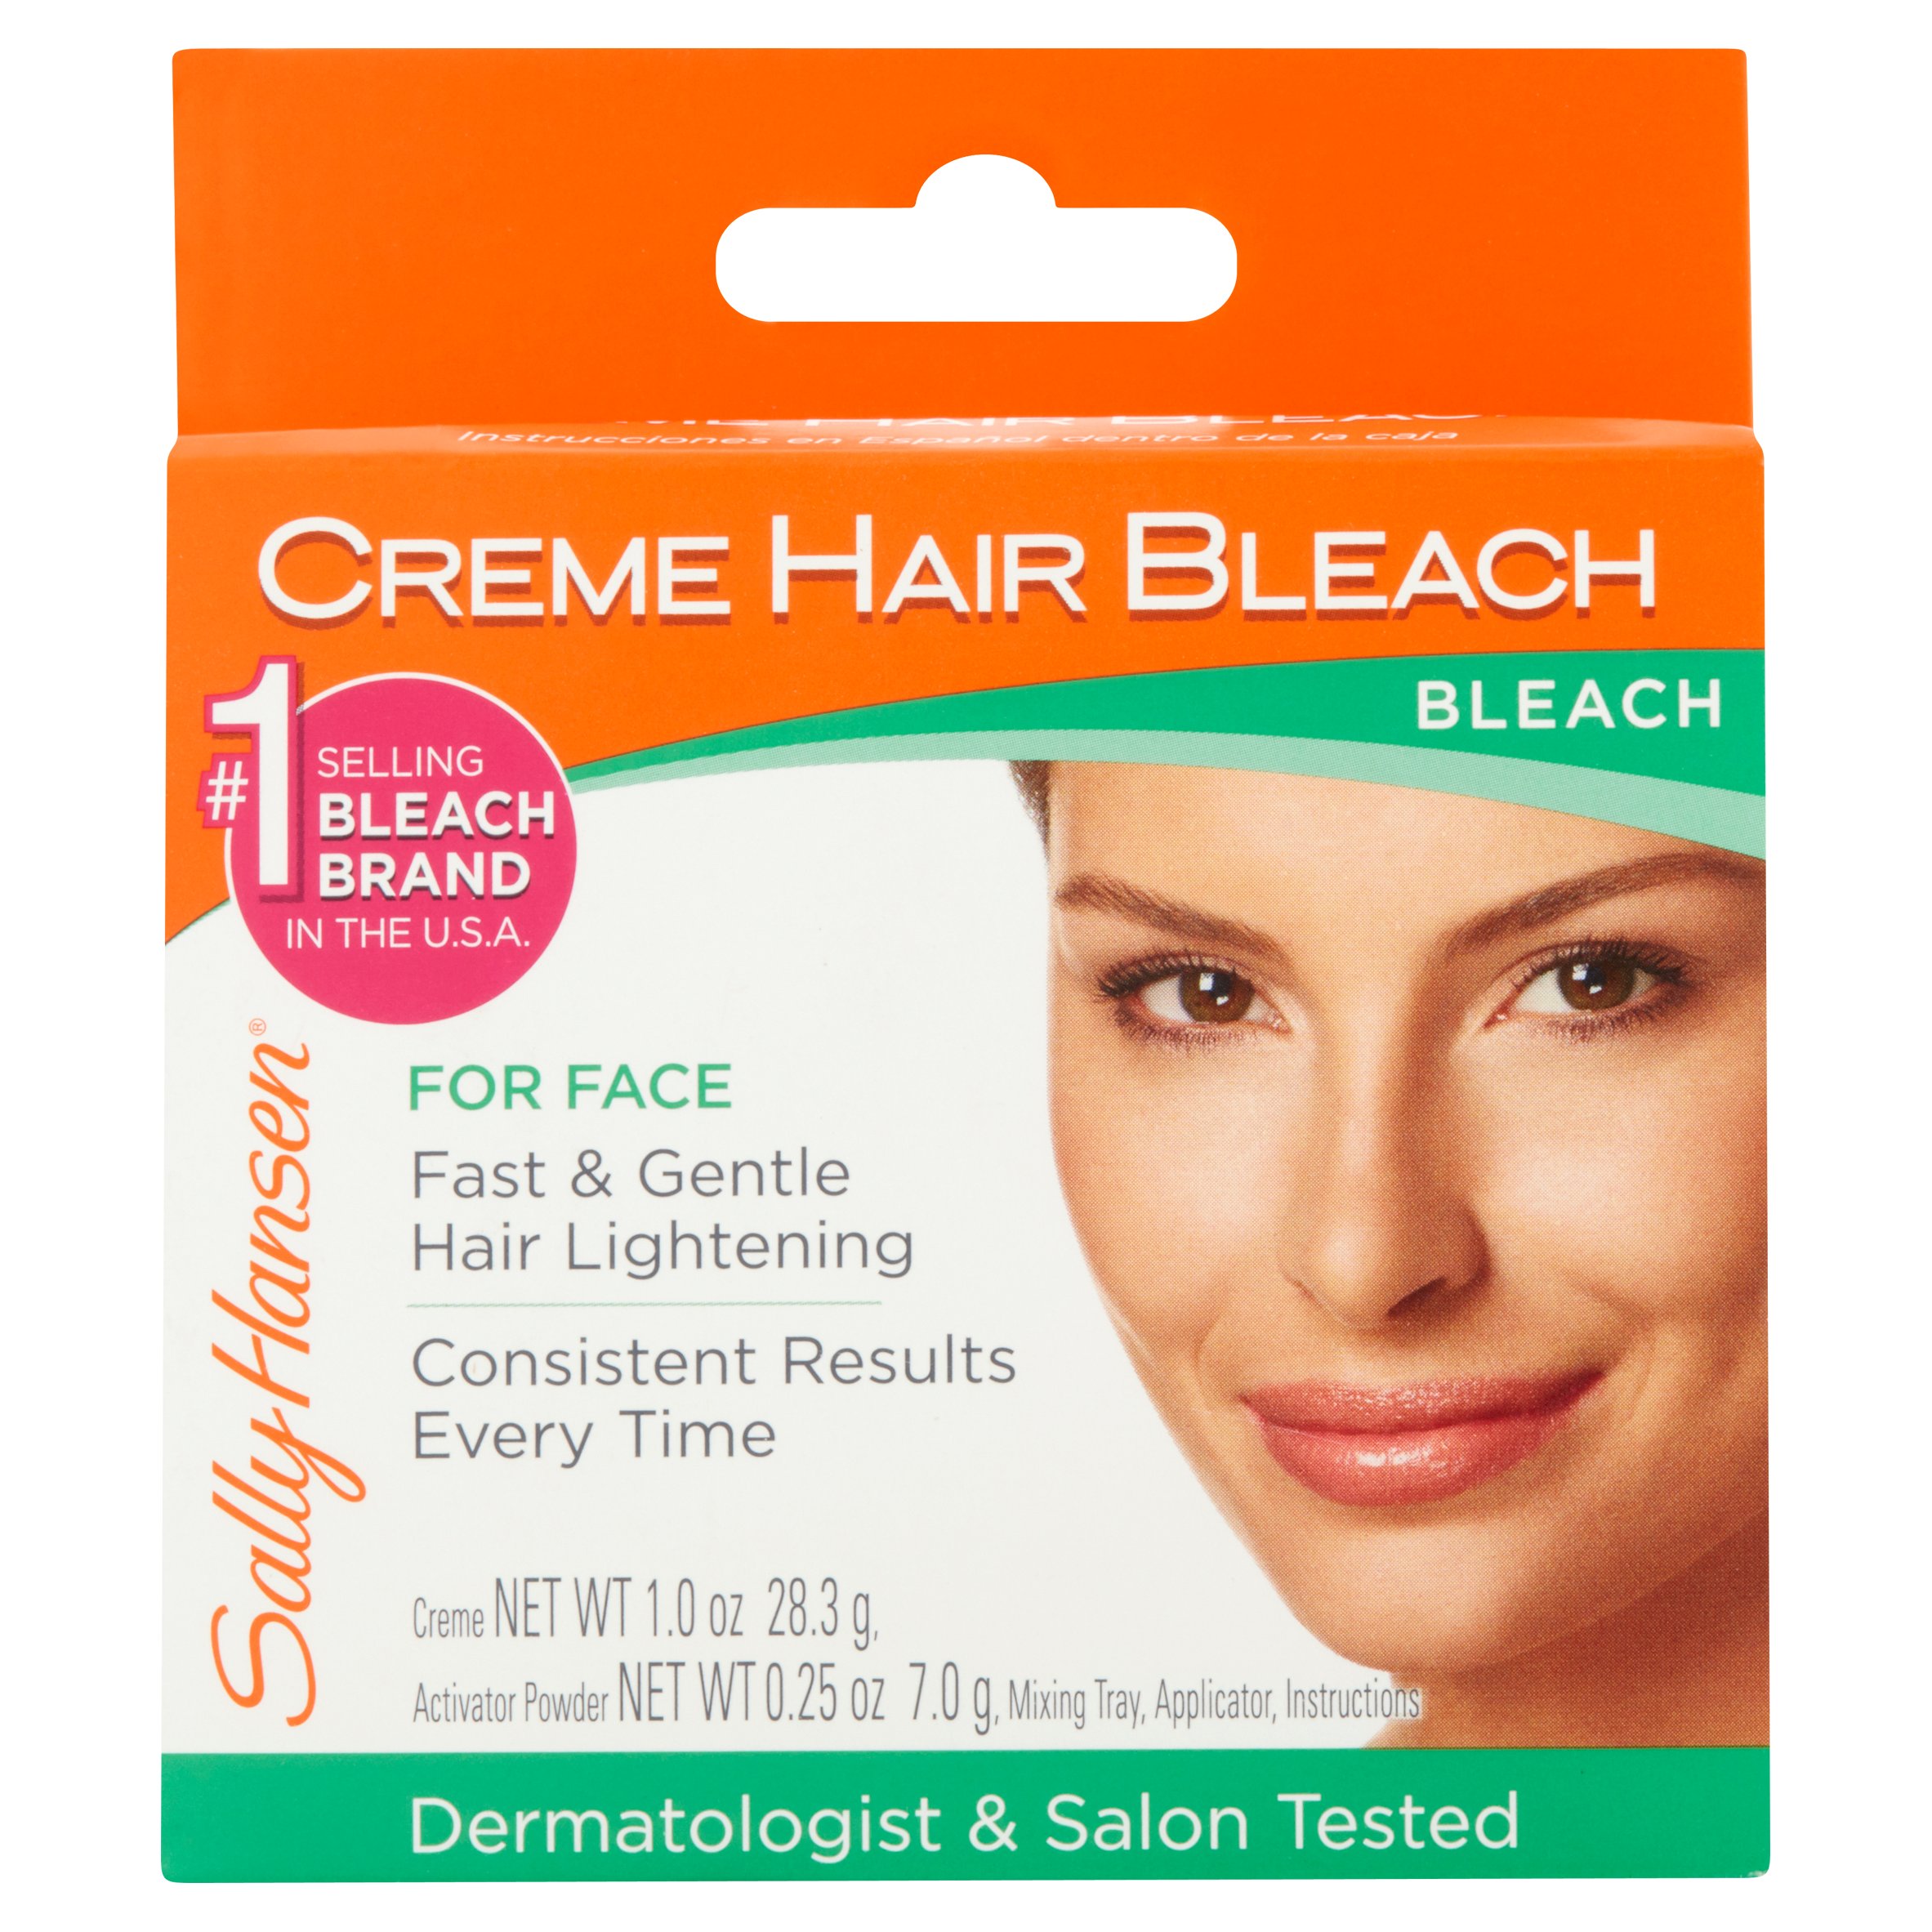 Sally Hansen Facial Hair Creme Bleach 1 ea - image 1 of 4